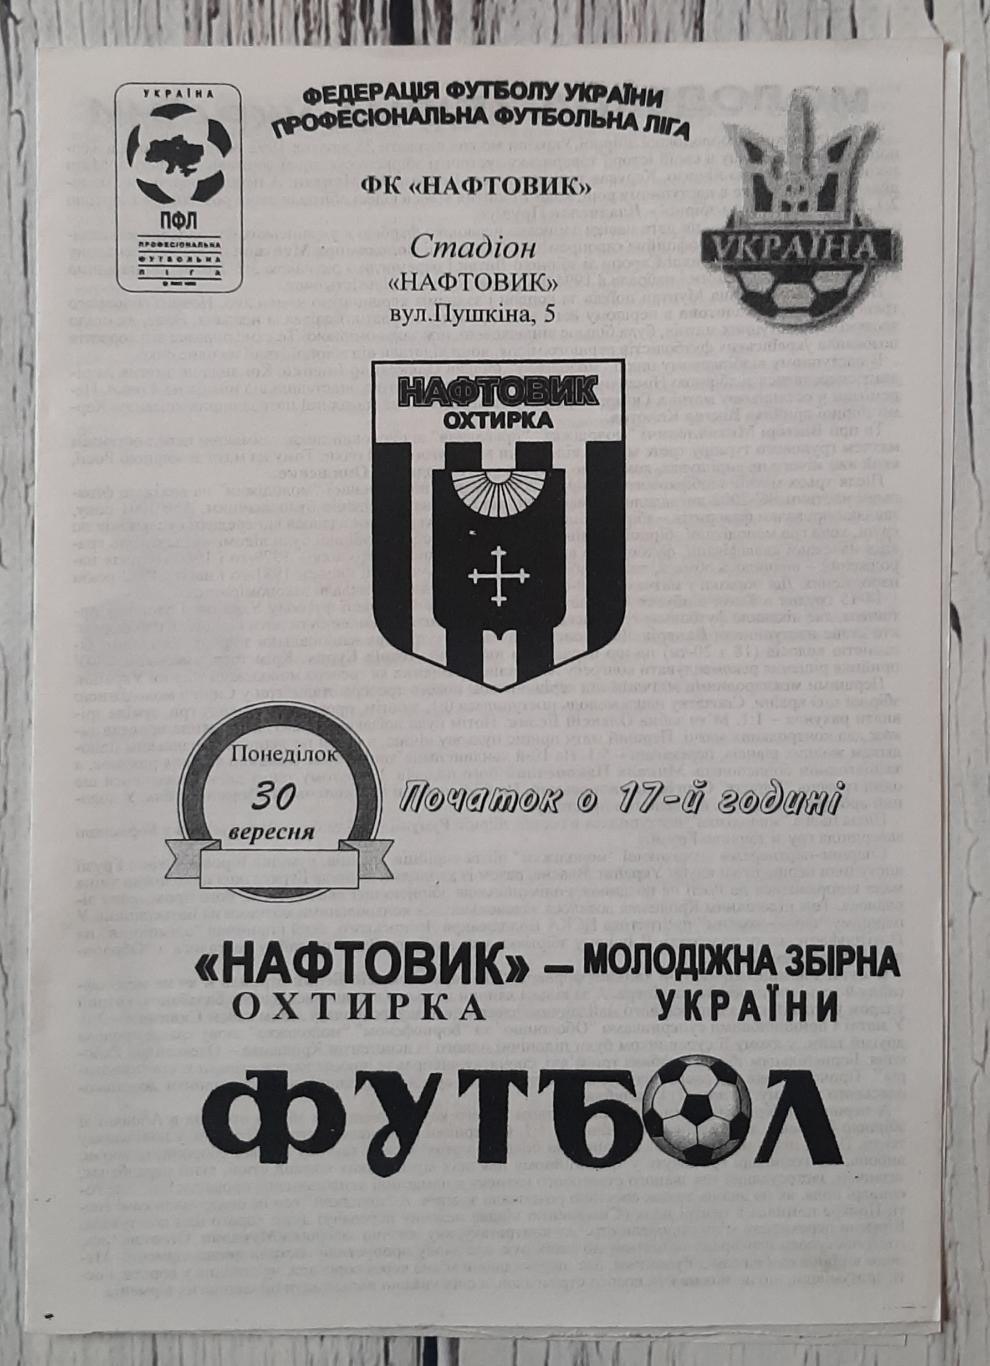 Нафтовик Охтирка - Україна (молодіжна збірна) /30.09.2002/. ТМ